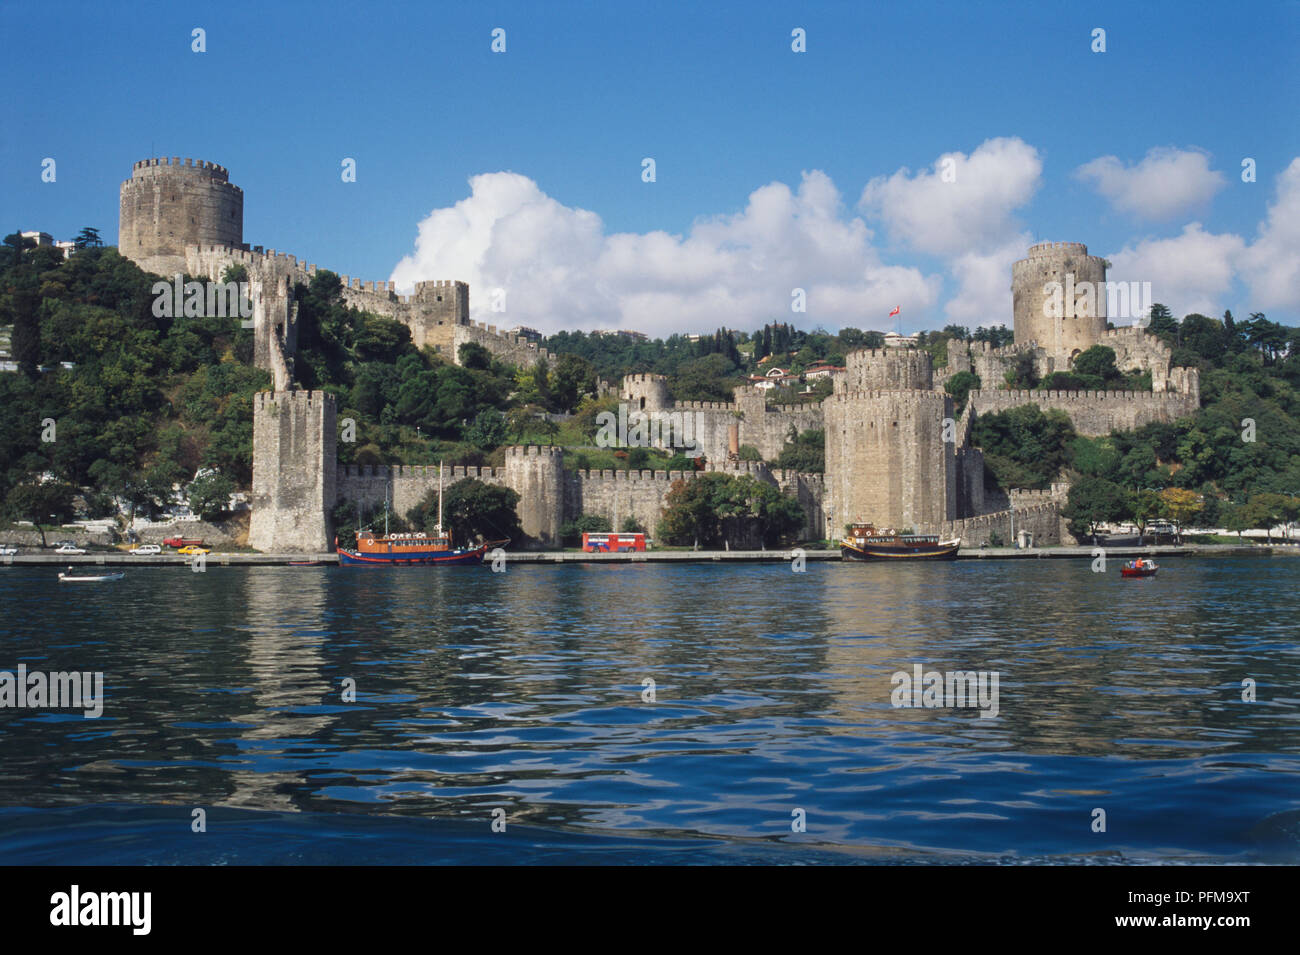 Asien, Türkei, Aussicht auf die Festung Europa liegt an der engsten Stelle des Flusses Bosporus, von Mehmet der Eroberer im Jahr 1452 gebaut, um ihm zu ermöglichen, Konstantinopel, Wachtürme, Türkische Flagge, Boote auf dem Wasser unter zu erfassen. Stockfoto